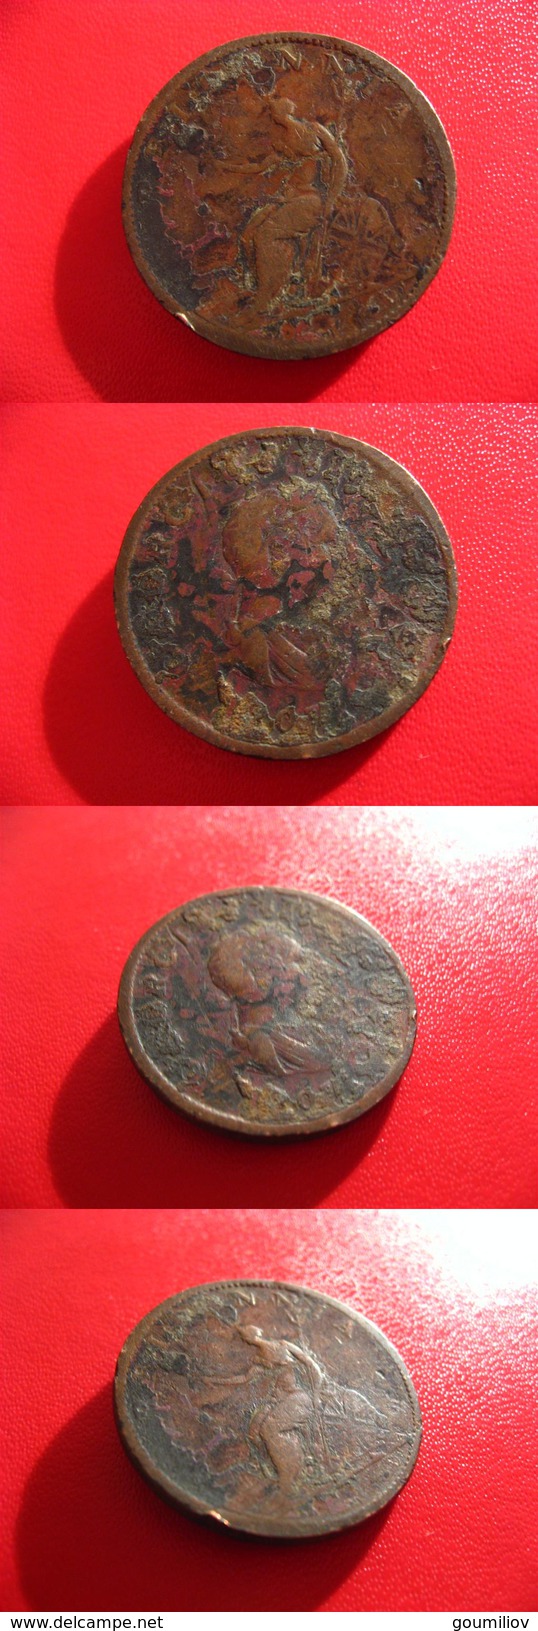 Grande-Bretagne - Great Britain - Half Penny 1807 Dans Son Jus 4309 - B. 1/2 Penny